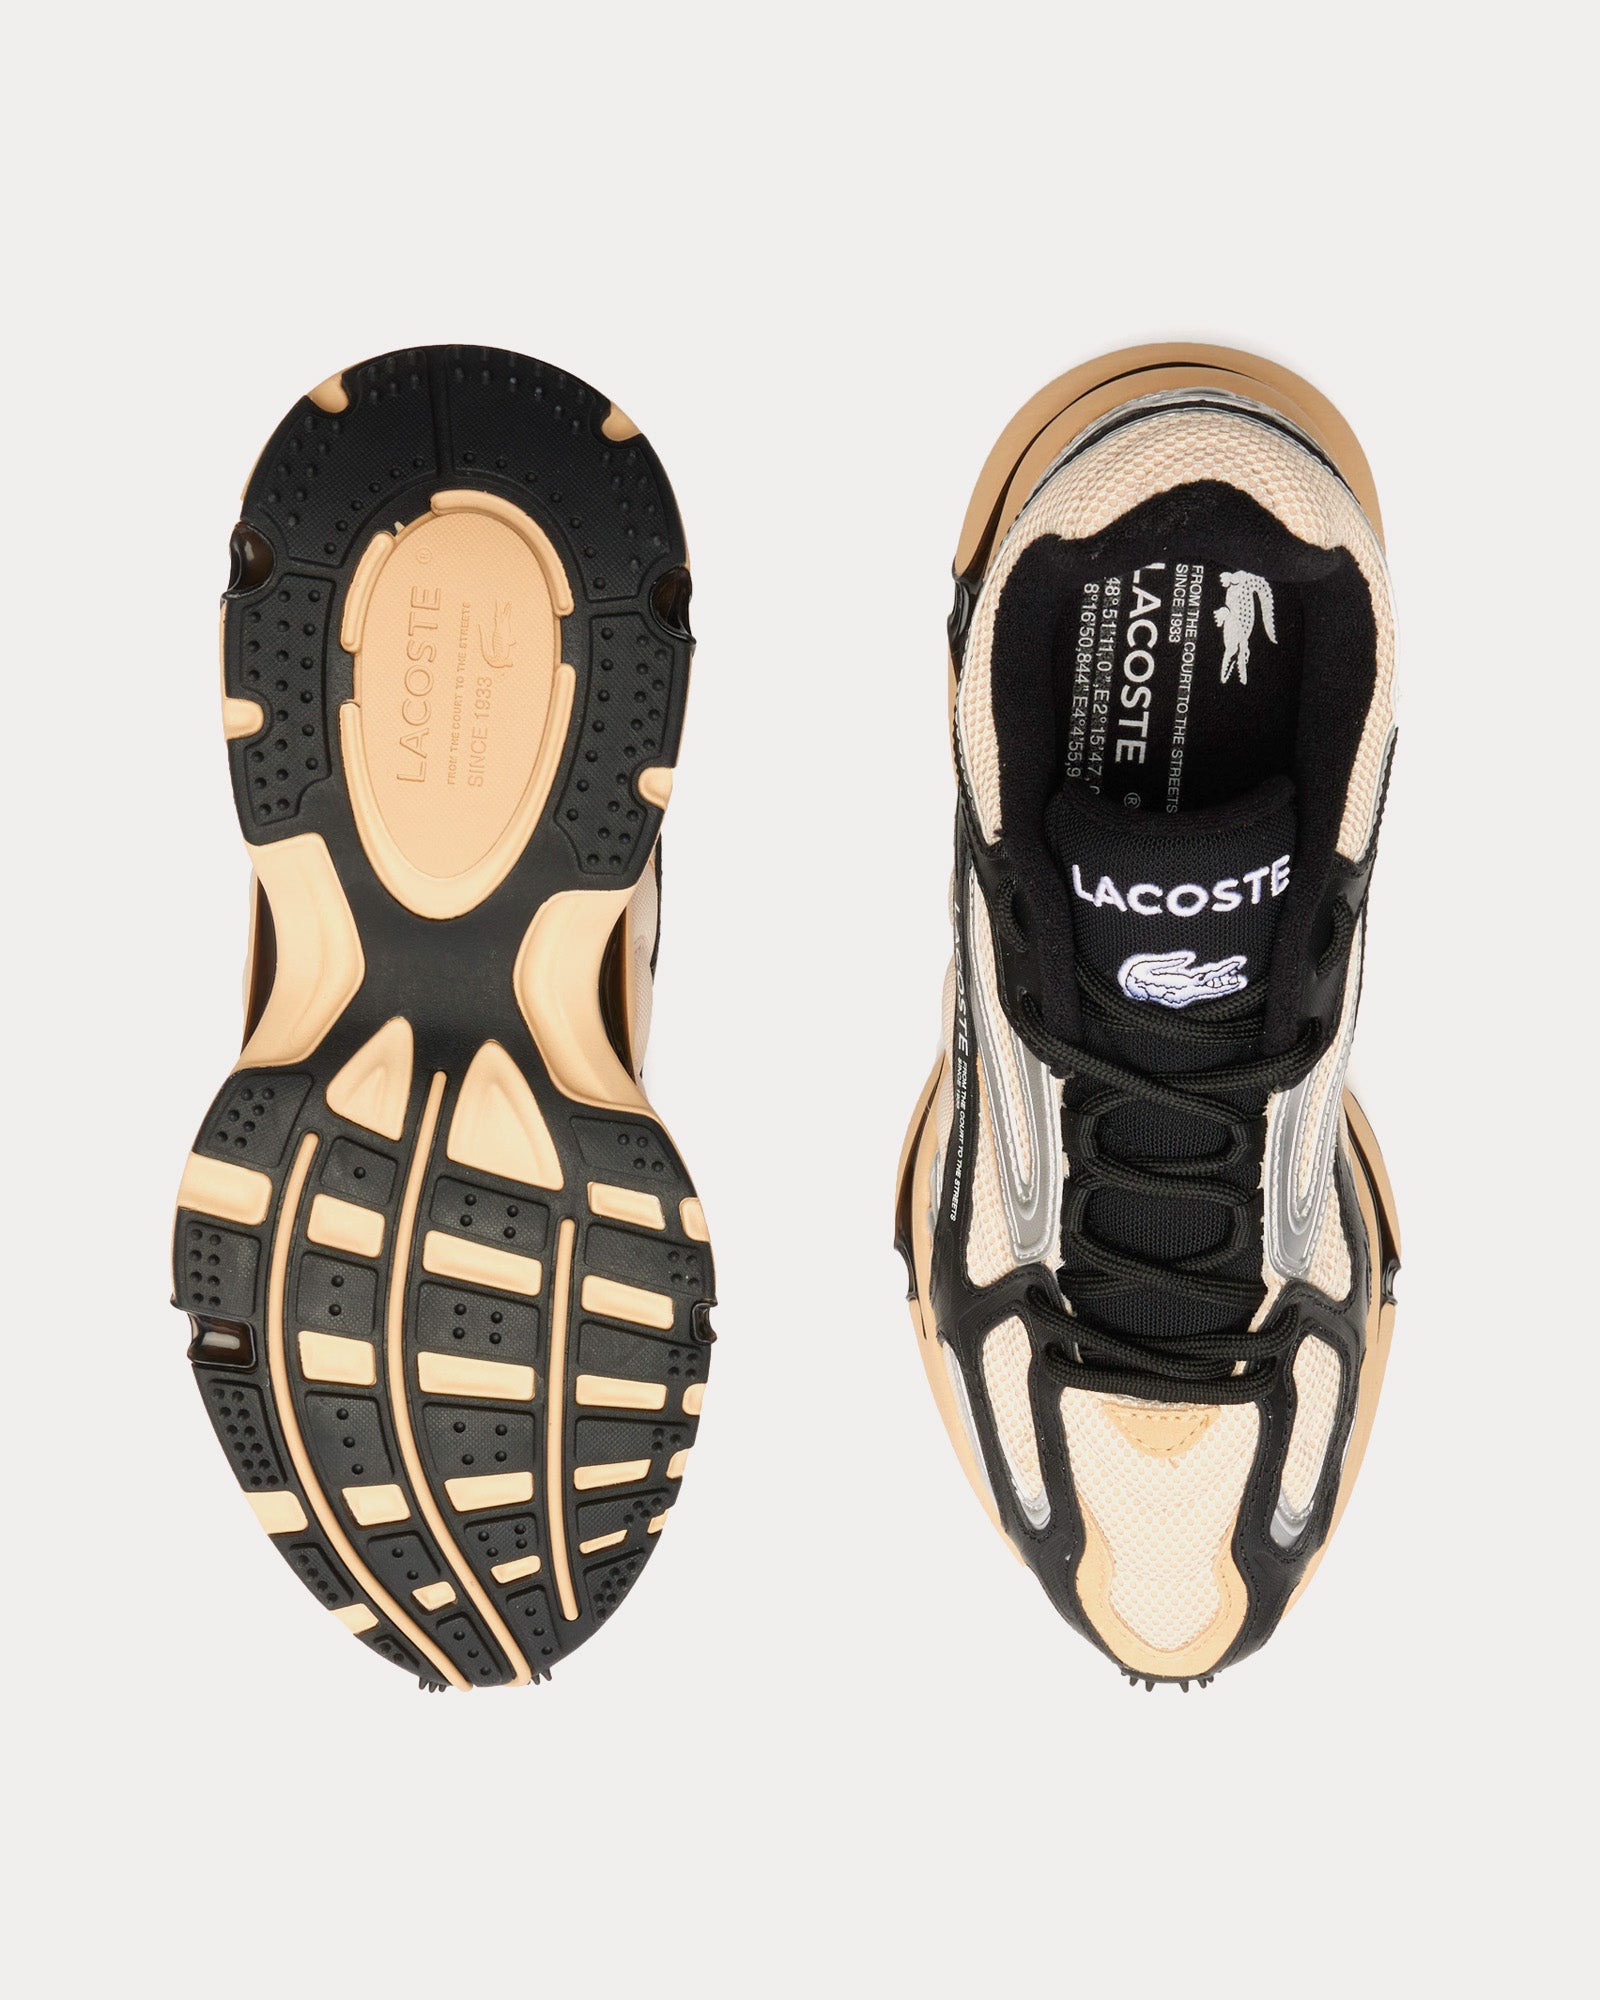 Lacoste - L003 2K24 Light Tan / Black Low Top Sneakers